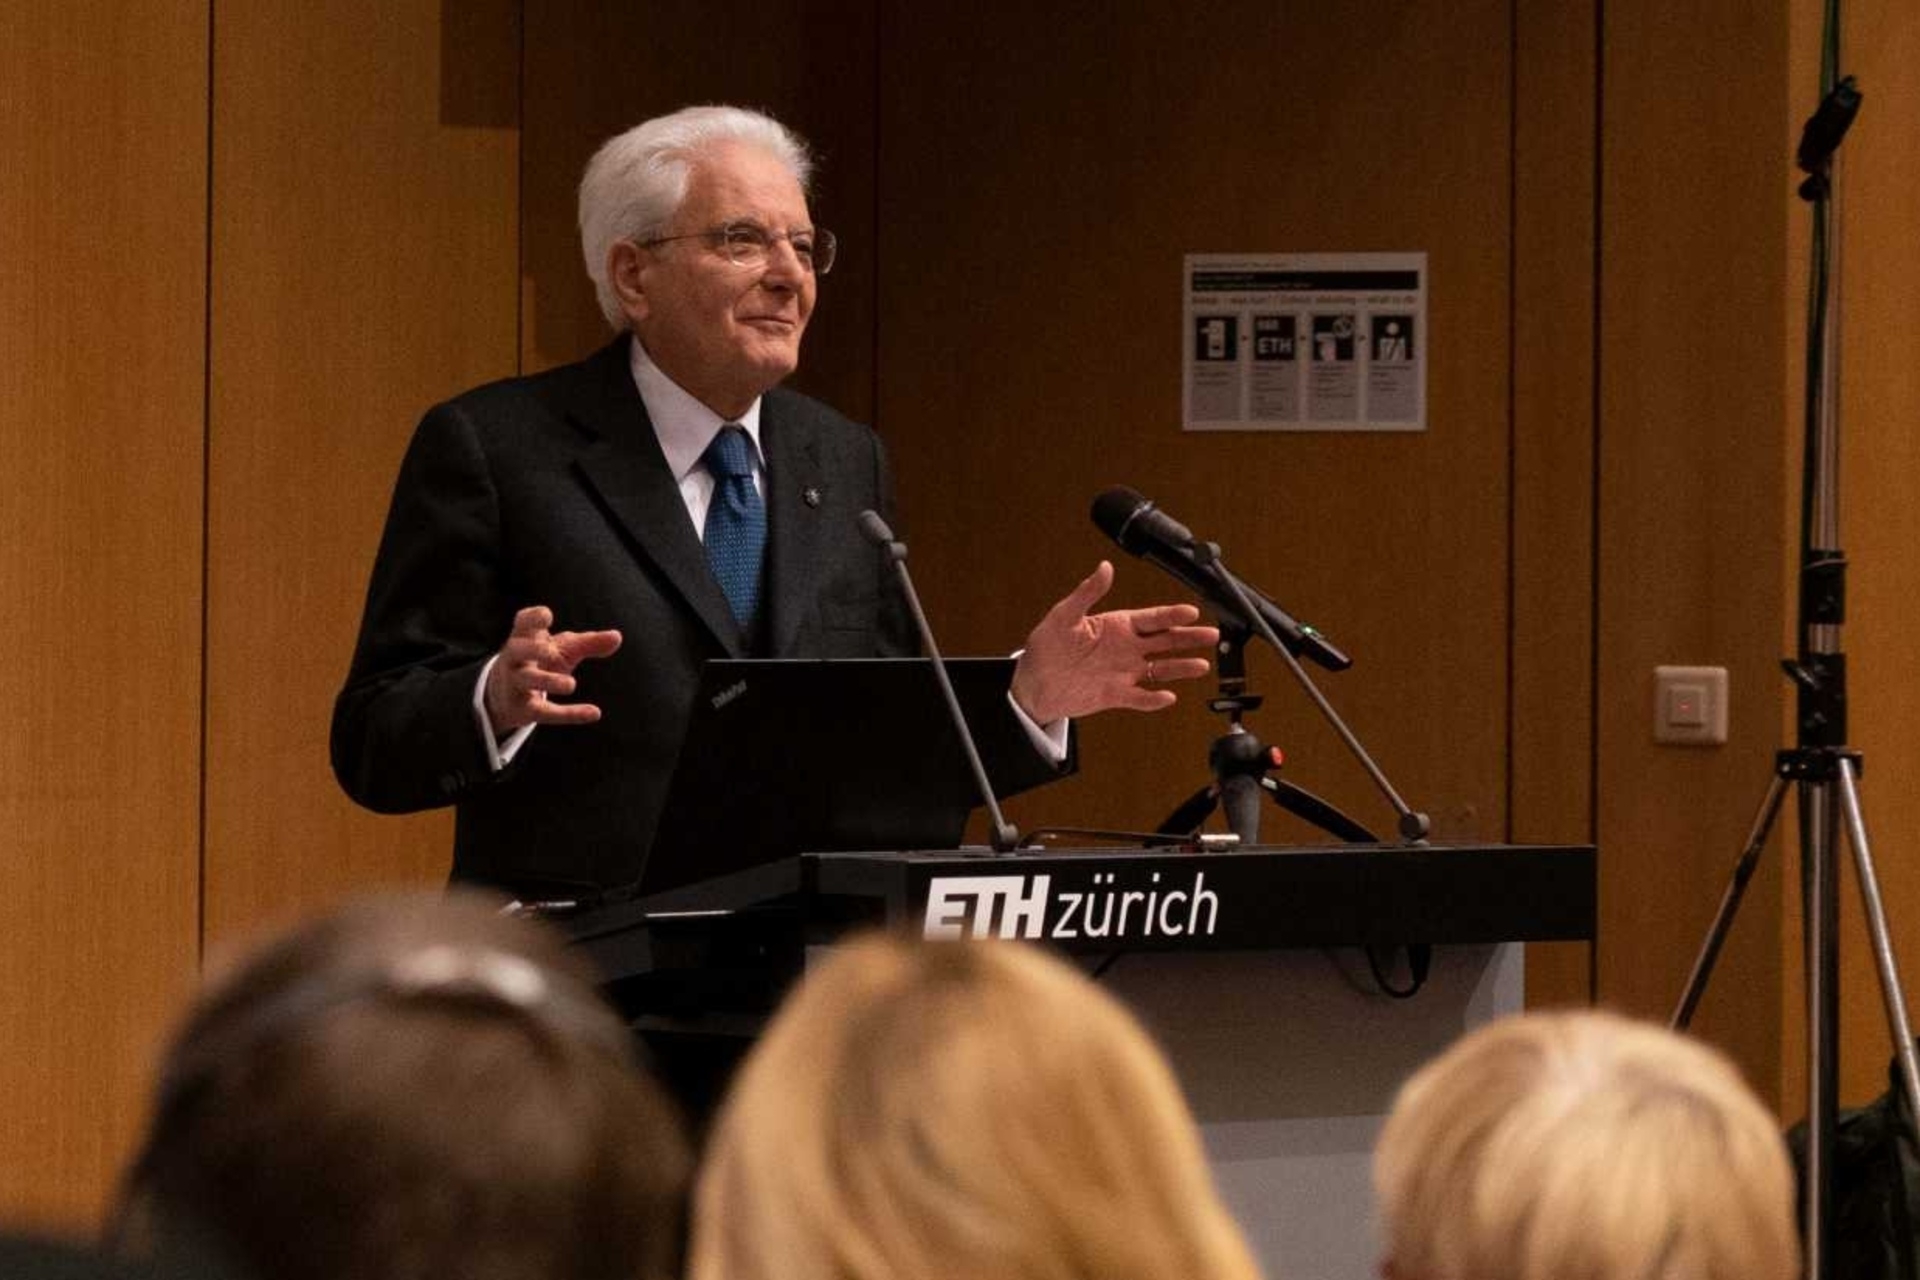 Sergio Mattarella a prononcé un discours à l'ETH Zurich lors de sa visite de trois jours en Suisse les 28, 29 et 30 novembre 2022